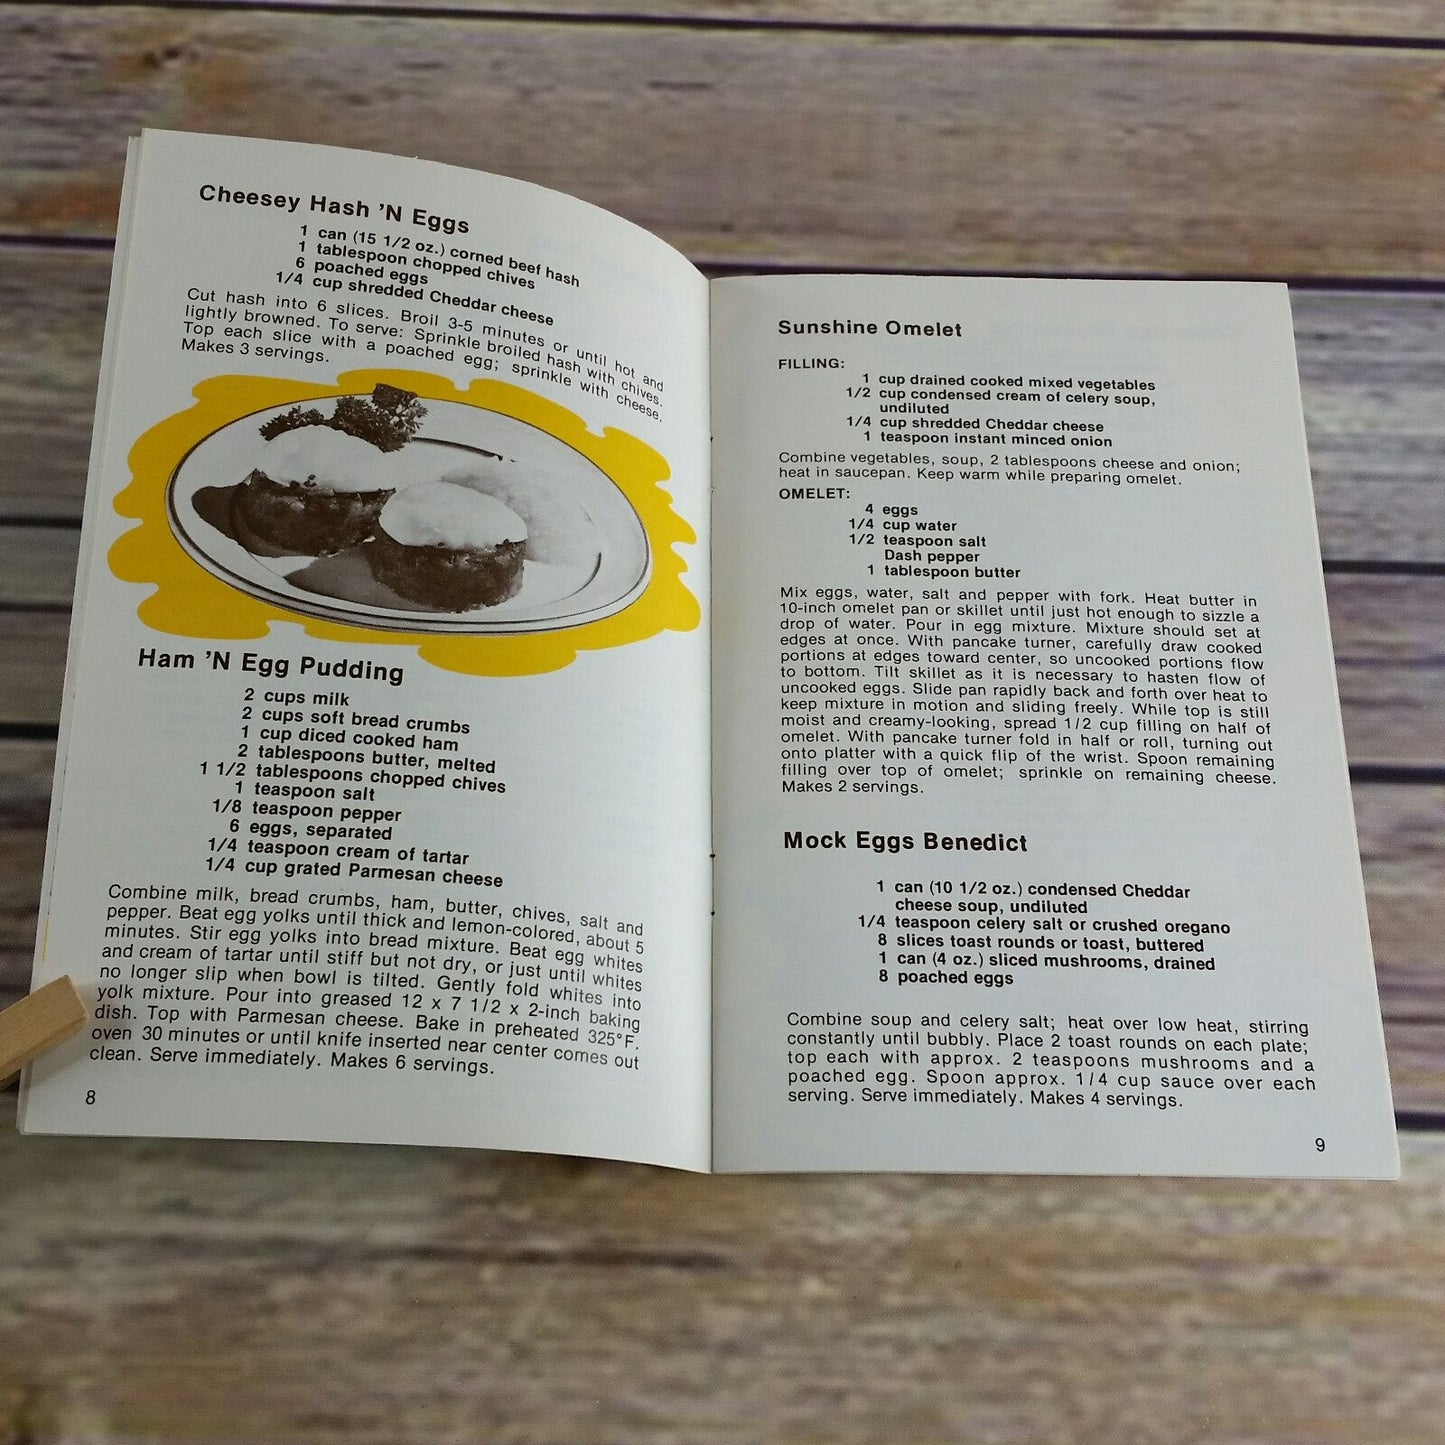 Vintage Cookbook Always Eggs All Ways 1974 Paperback Booklet American Egg Board 1970s Egg Promo